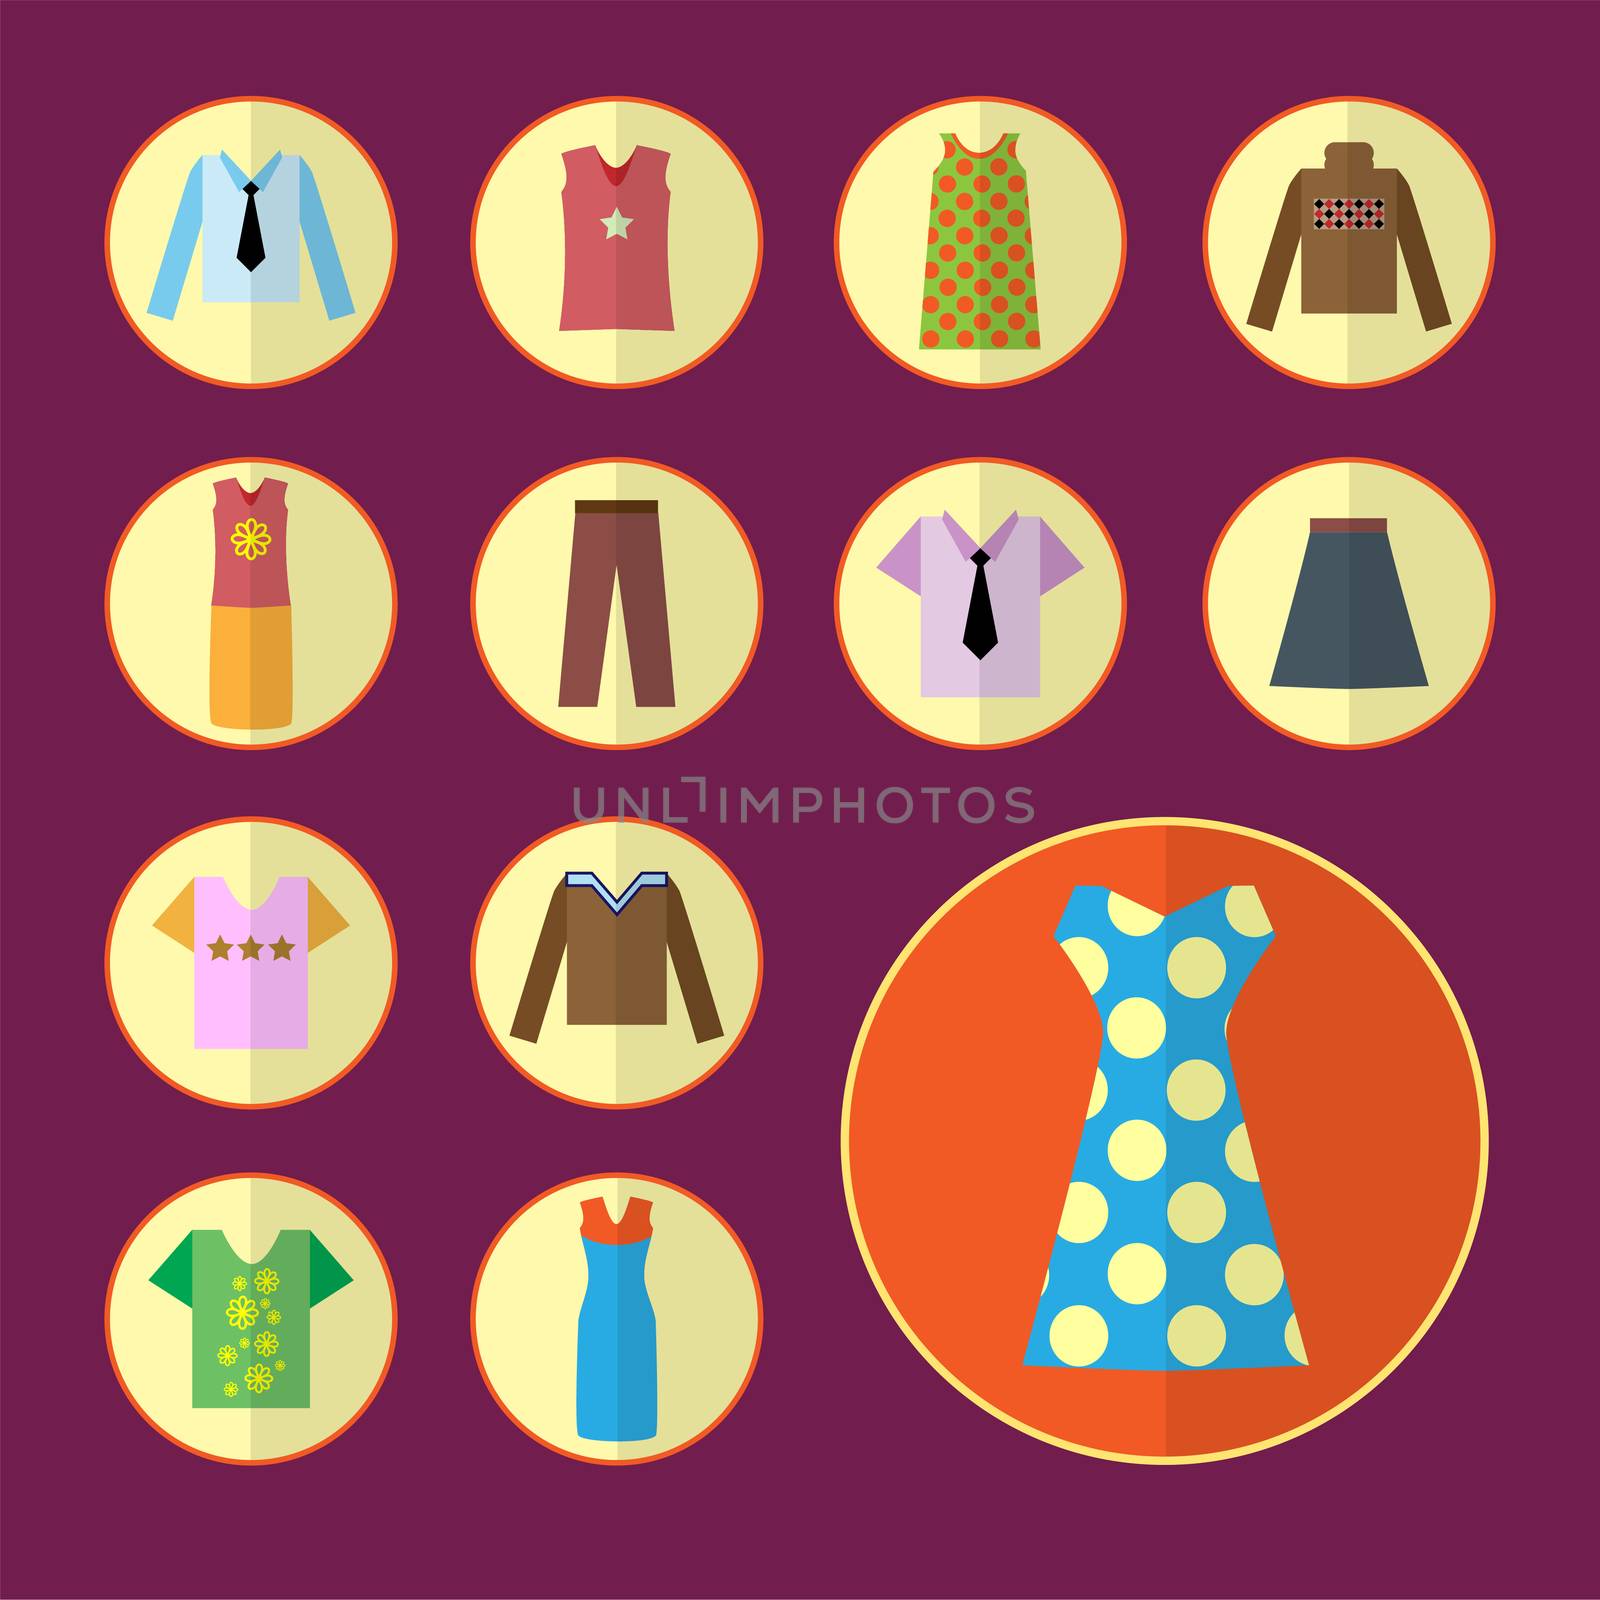 Clothing icons set, shopping elements flat design. illustration